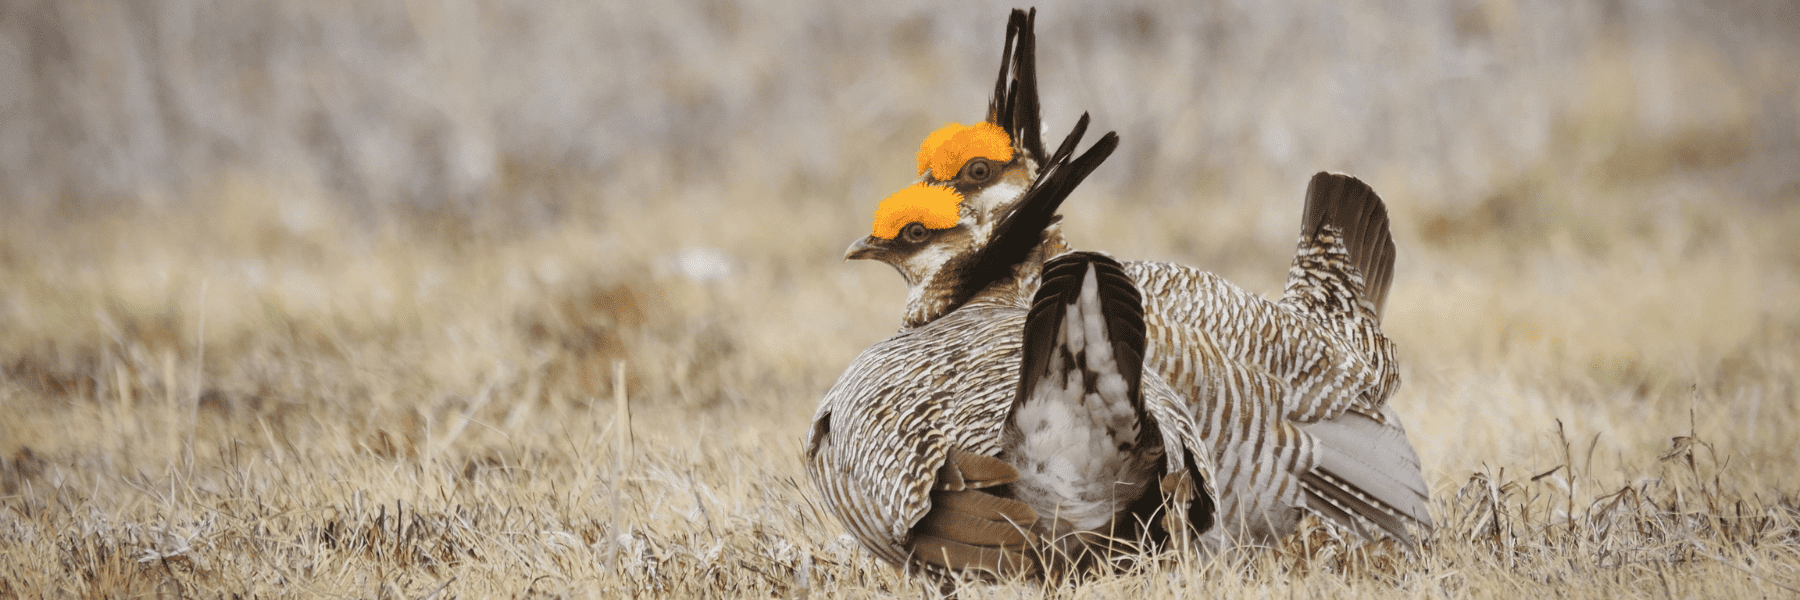 lesser prairie chicken - header - jeremy roberts conservation media llc